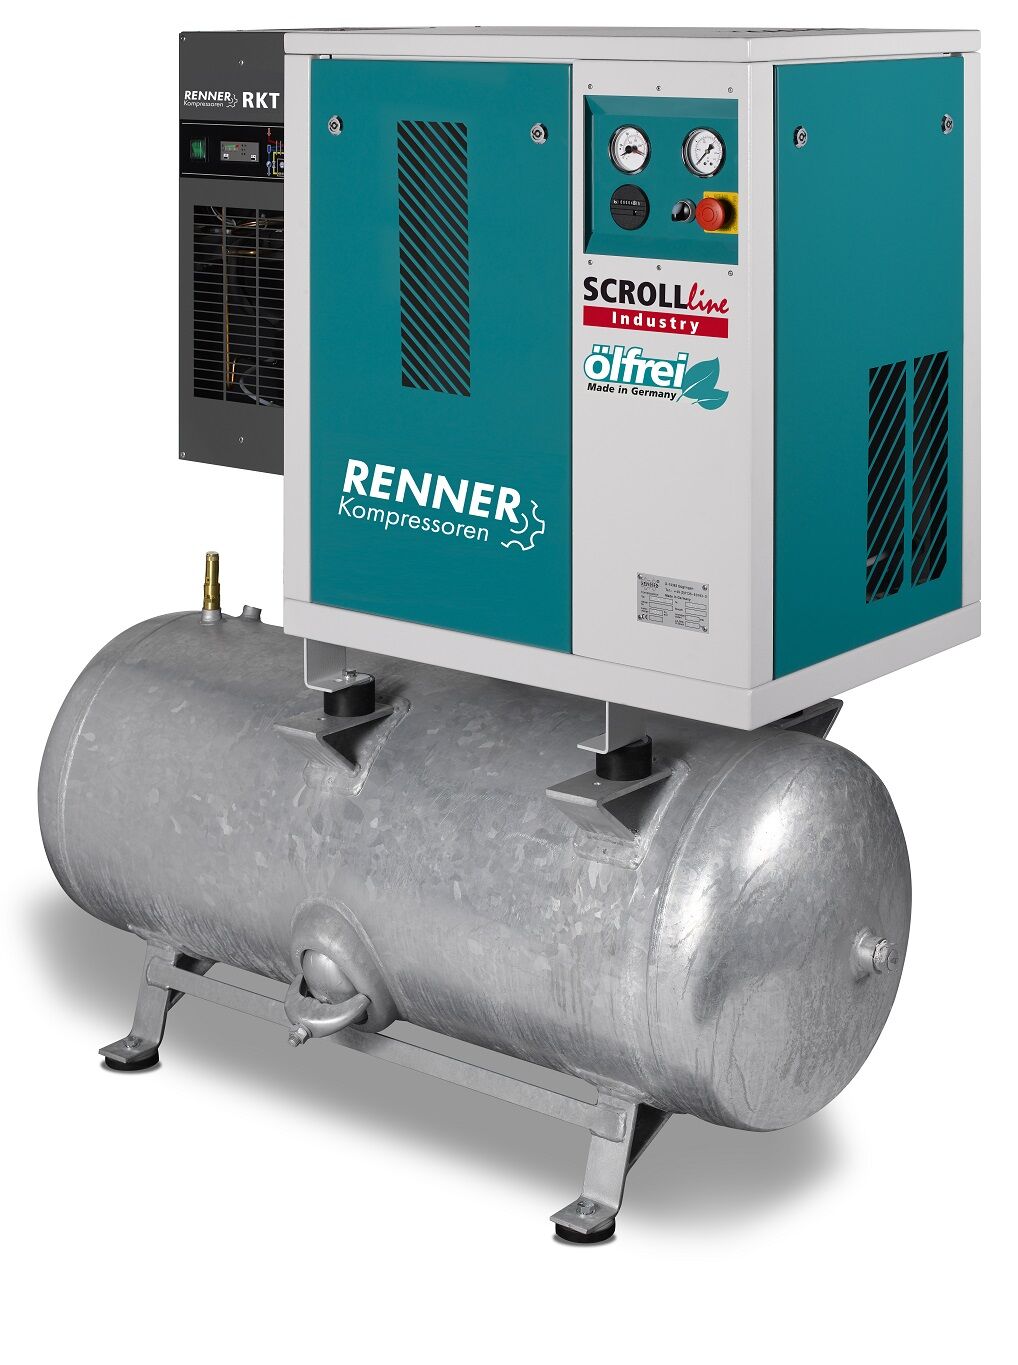 RENNER-Scrollkompr. Industry ölfrei - SLDK-I 3,7 auf 250 Liter Druckbehälter mit Kältetrockner